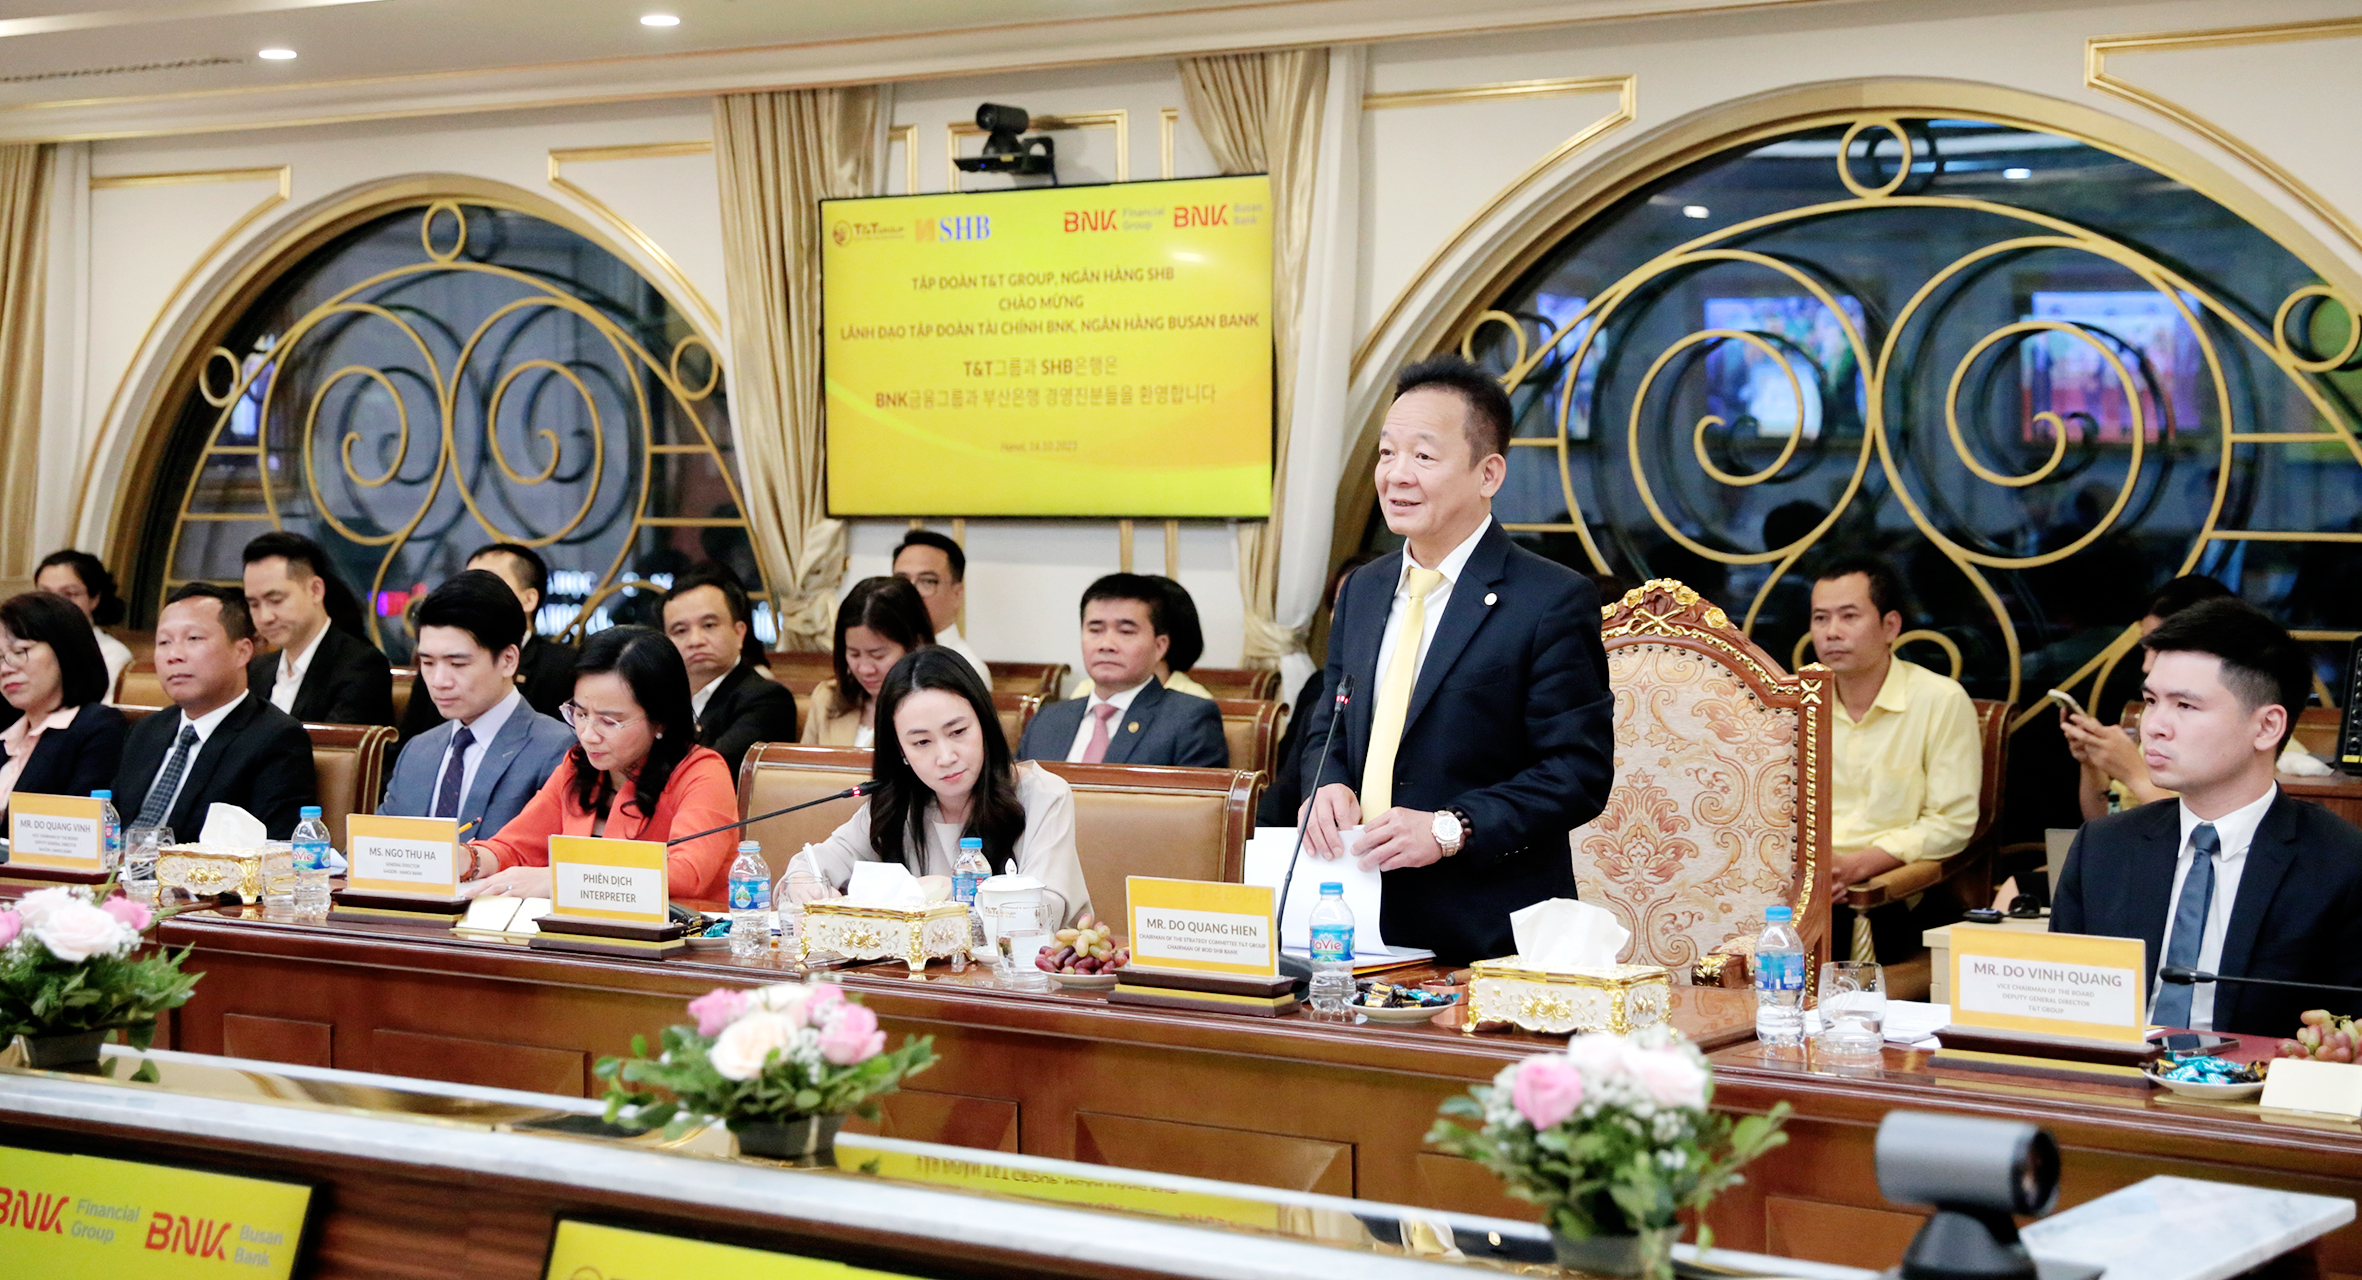  Ông Đỗ Quang Hiển – Chủ tịch HĐQT SHB tin tưởng sự hợp tác trong thời gian tới của SHB và Ngân hàng Busan sẽ góp phần thúc đẩy hợp tác phát triển giữa các doanh nghiệp Việt Nam – Hàn Quốc